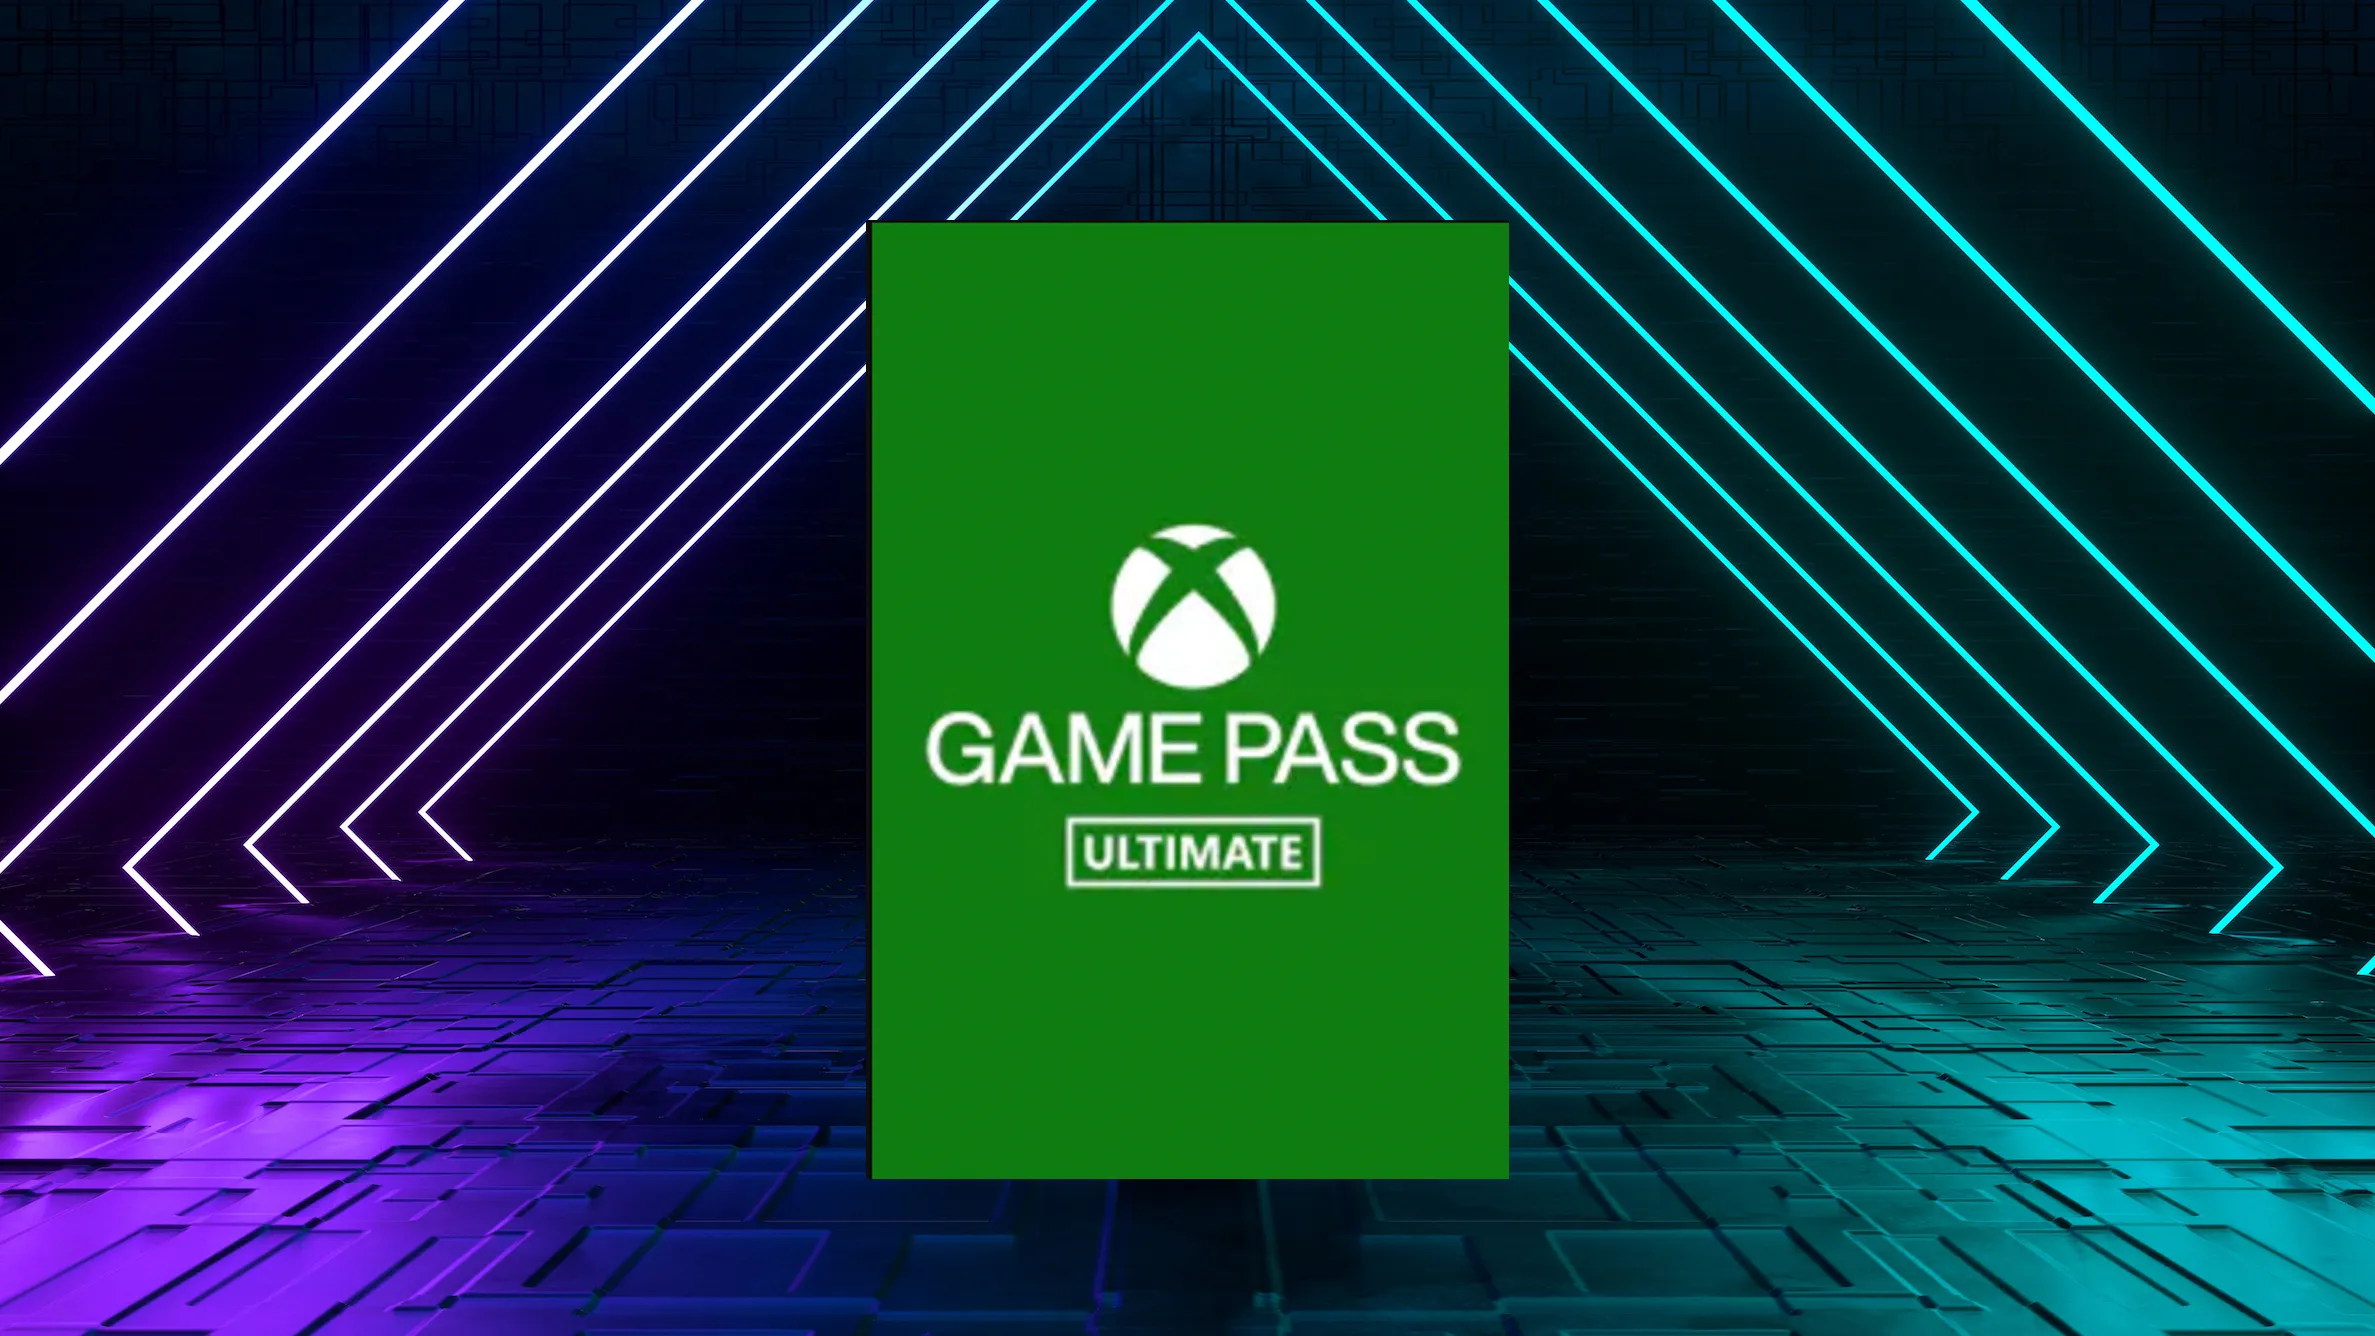 لديك اشتراك Game Pass Ultimate؟ احصل الآن على هذه الألعاب الرائعة مجانًا!